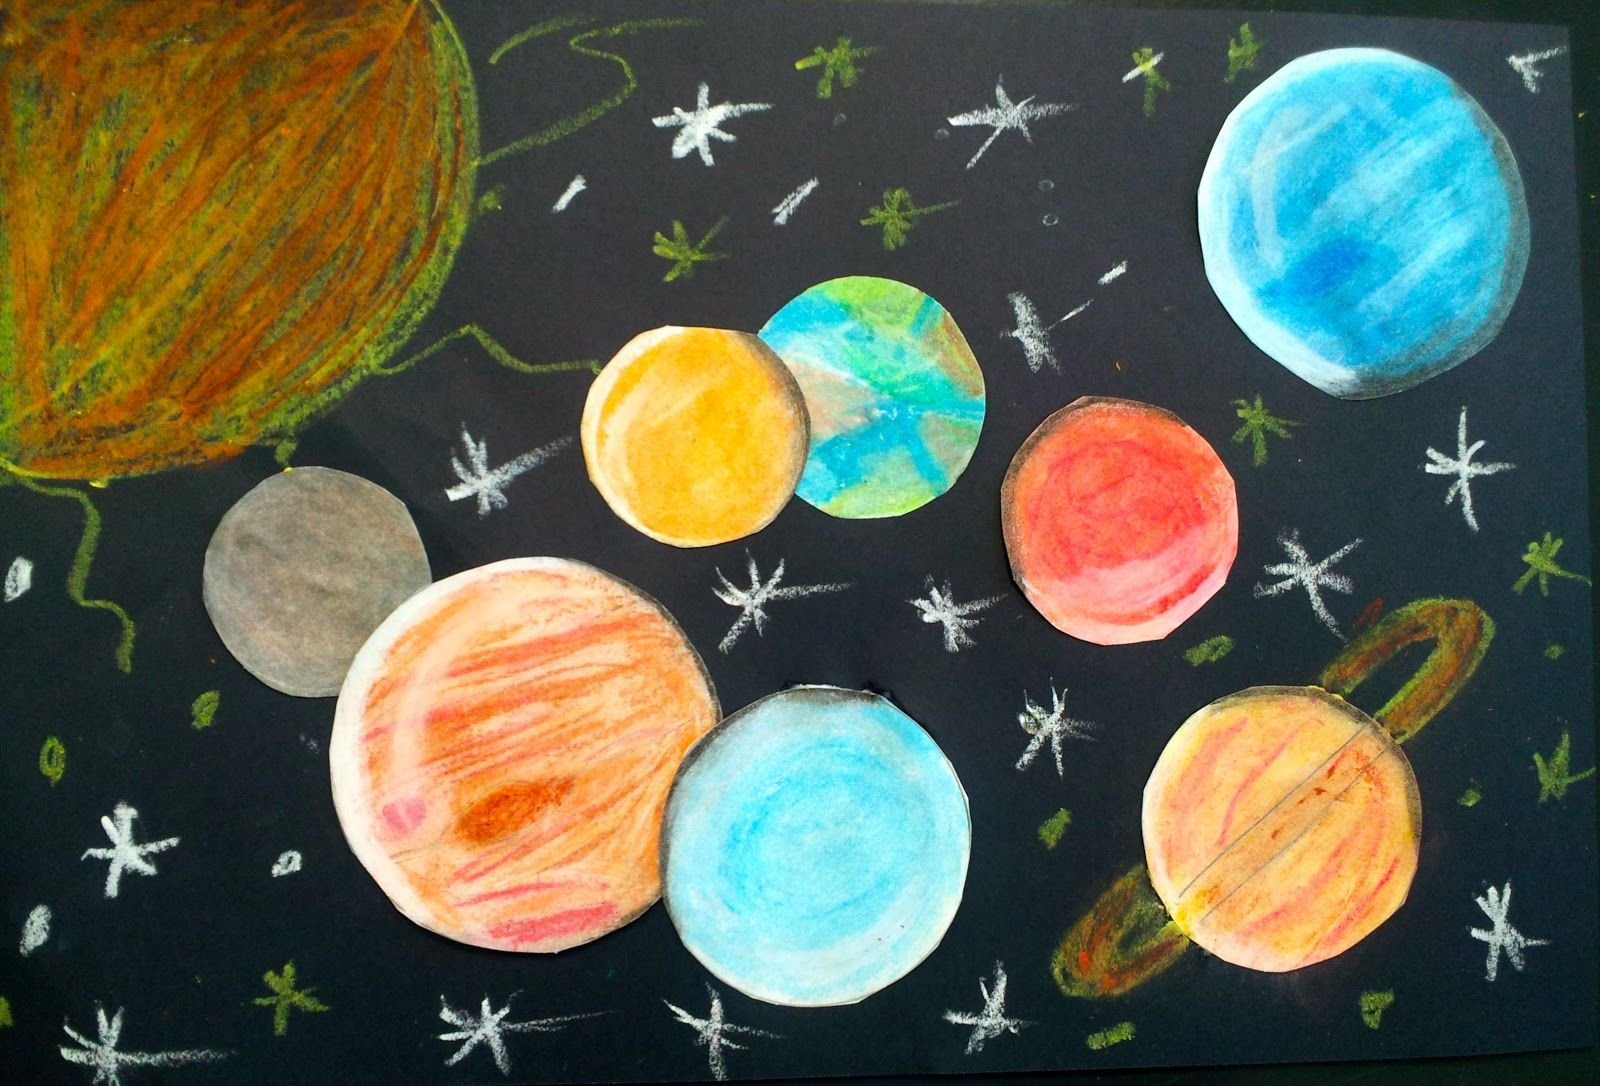 Как нарисовать космос с планетами